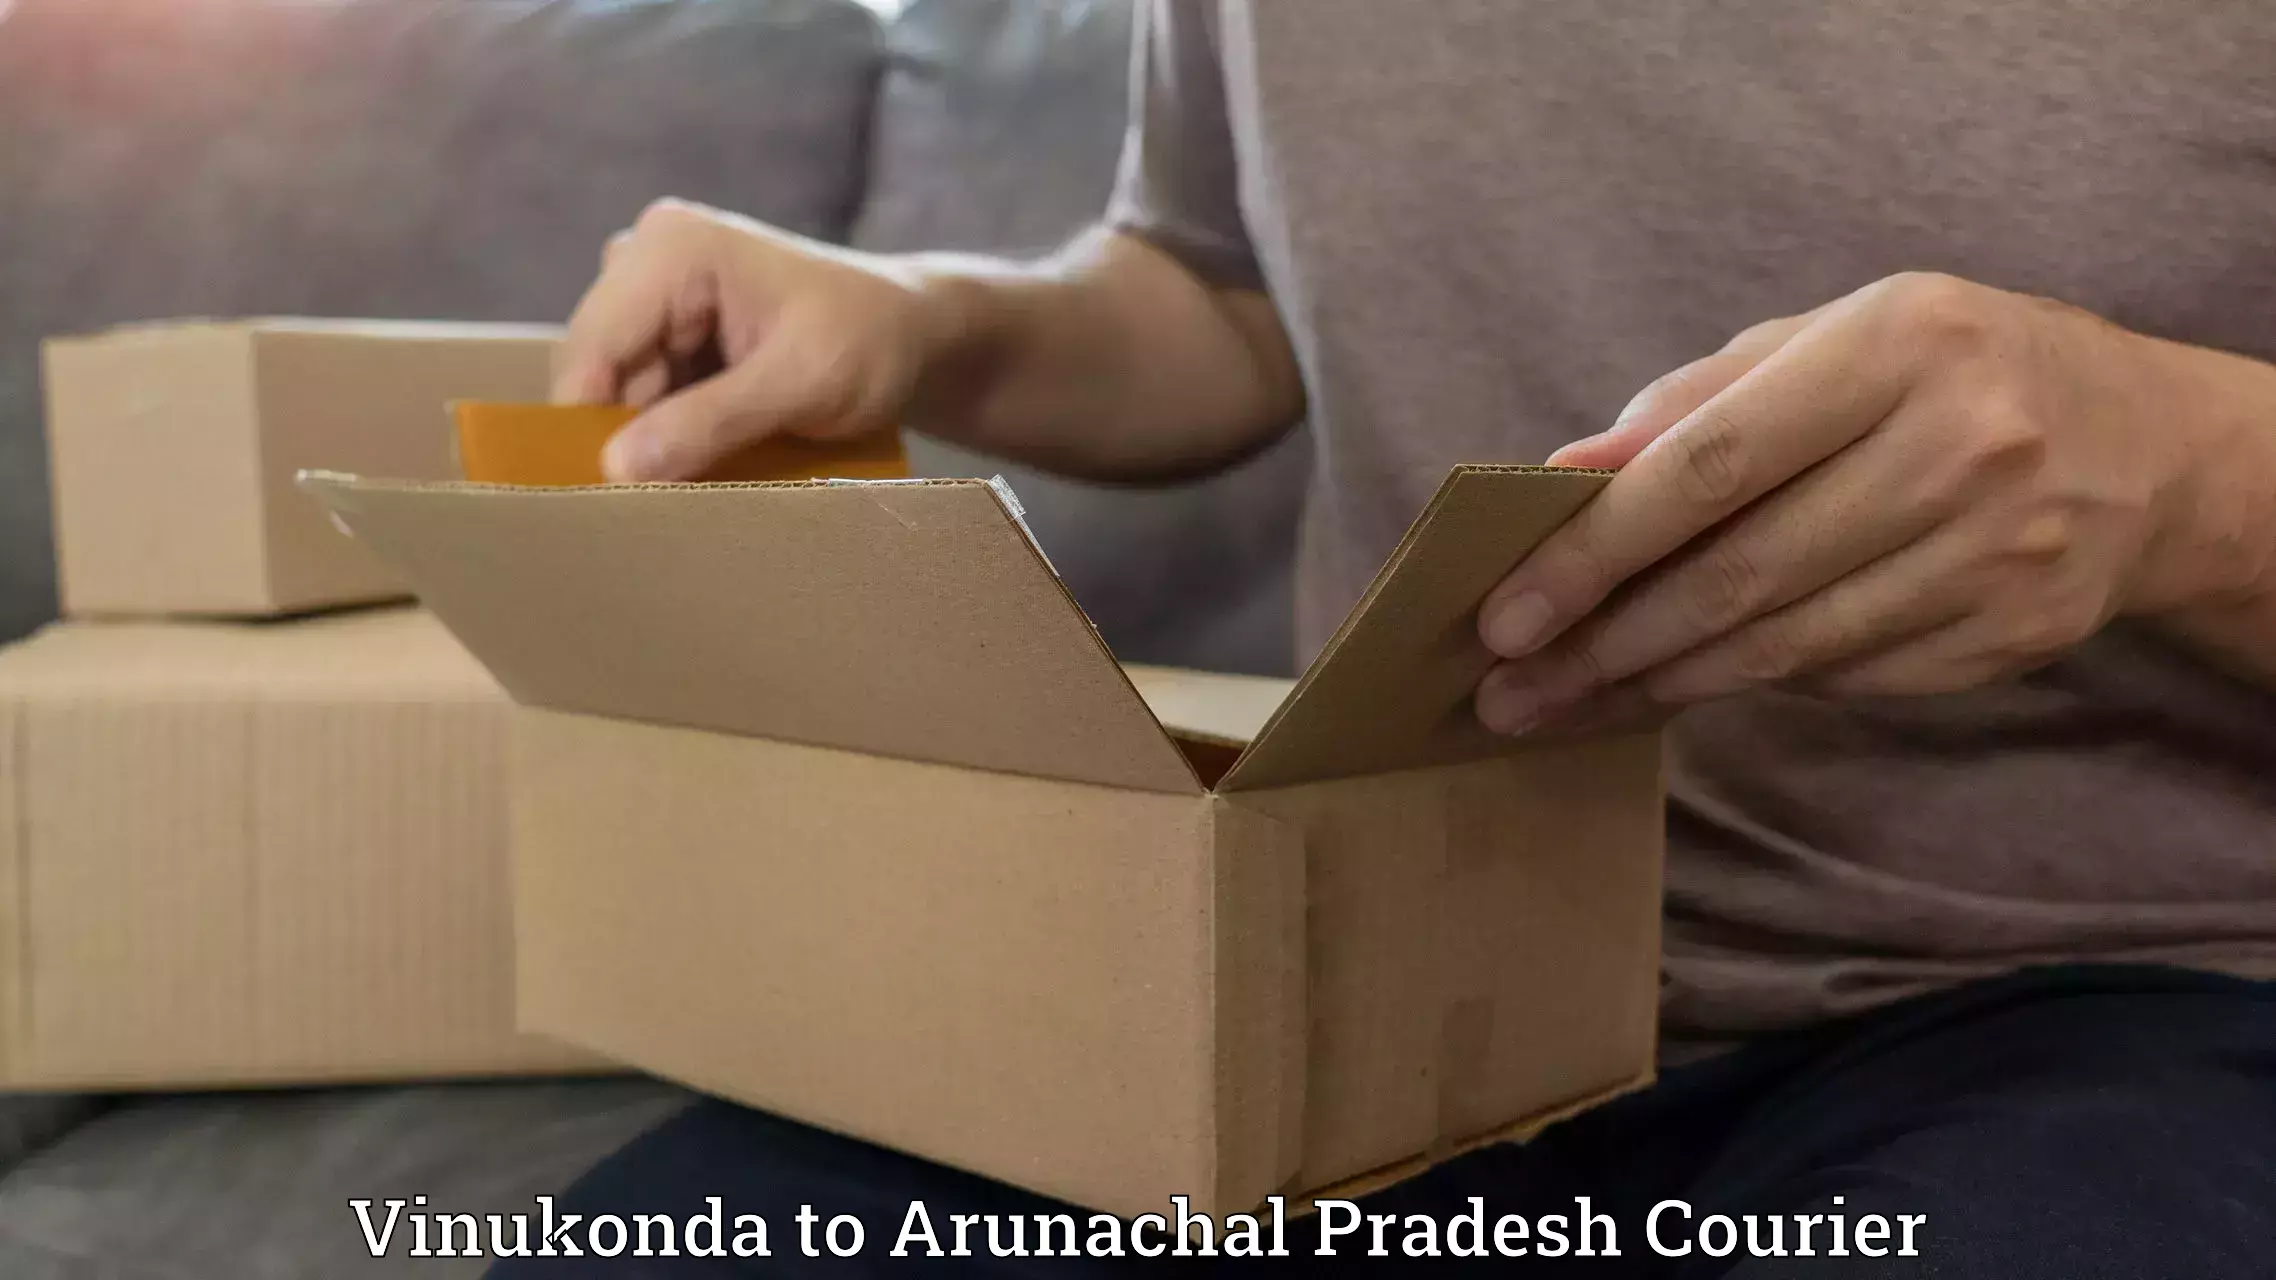 Courier service comparison Vinukonda to Arunachal Pradesh